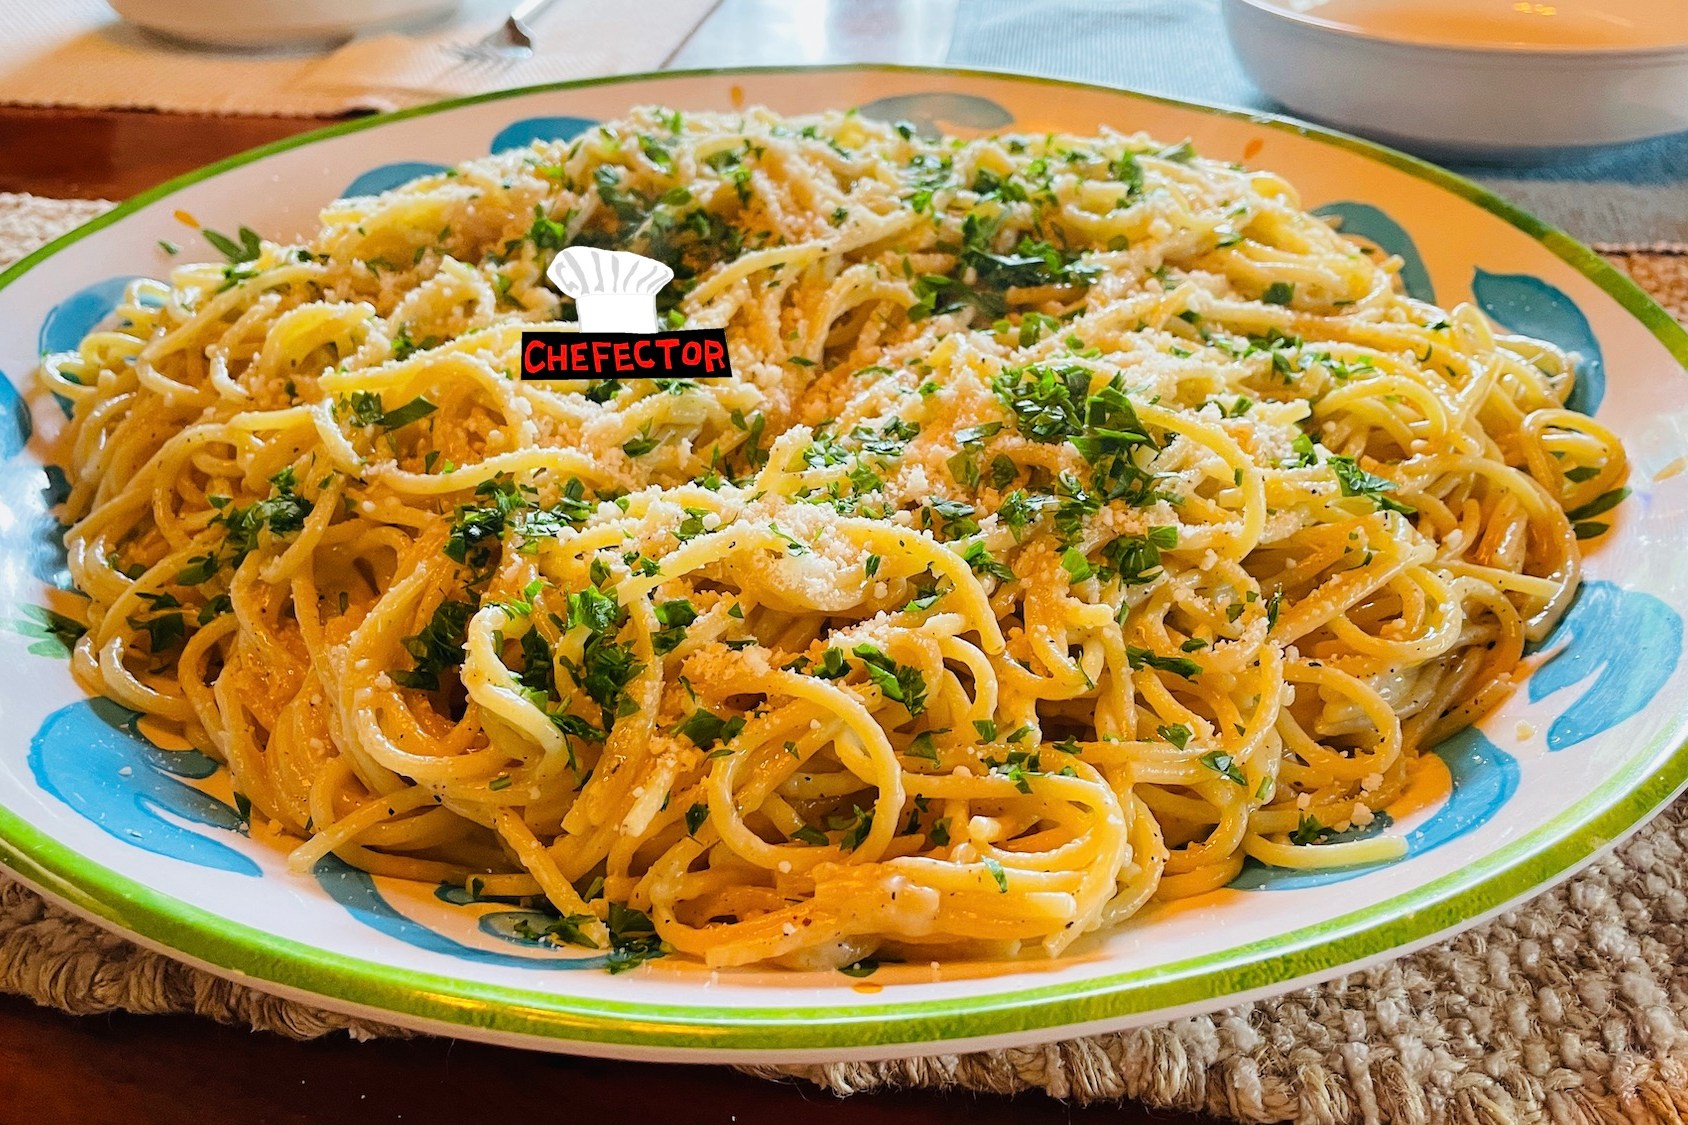 A huge platter of spaghetti cacio e pepe